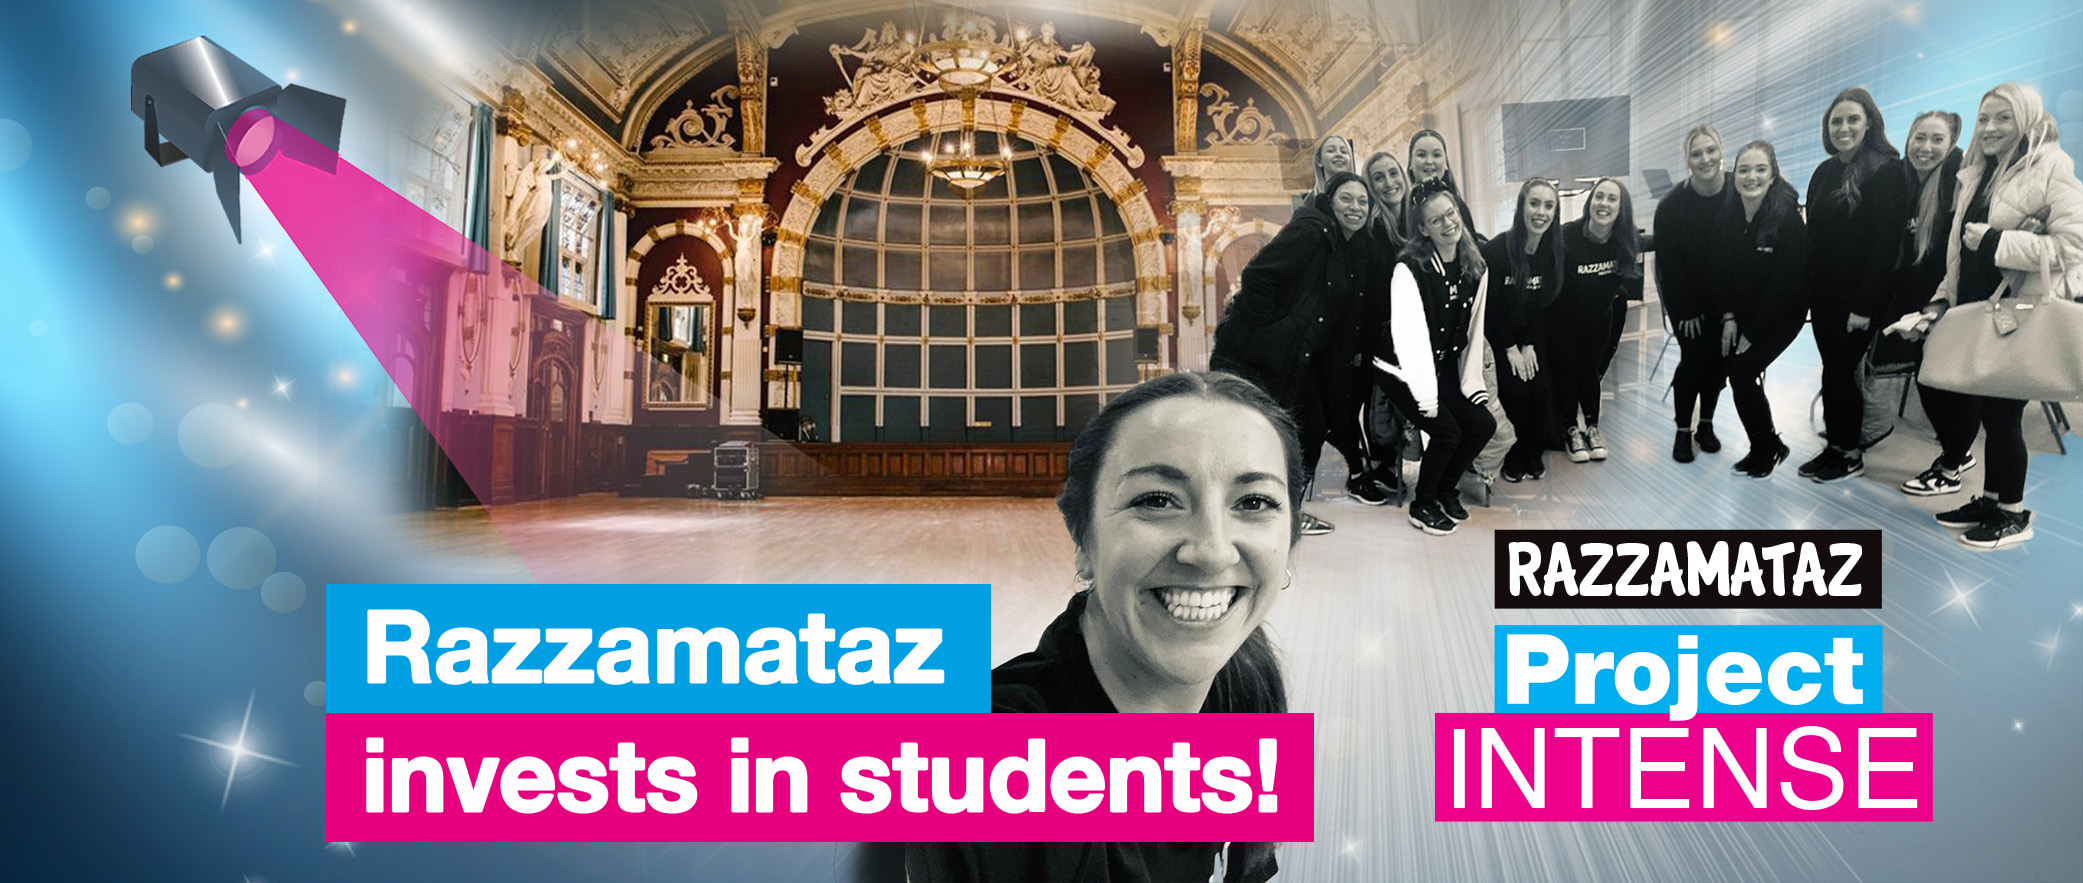 Razzamataz invests in students!